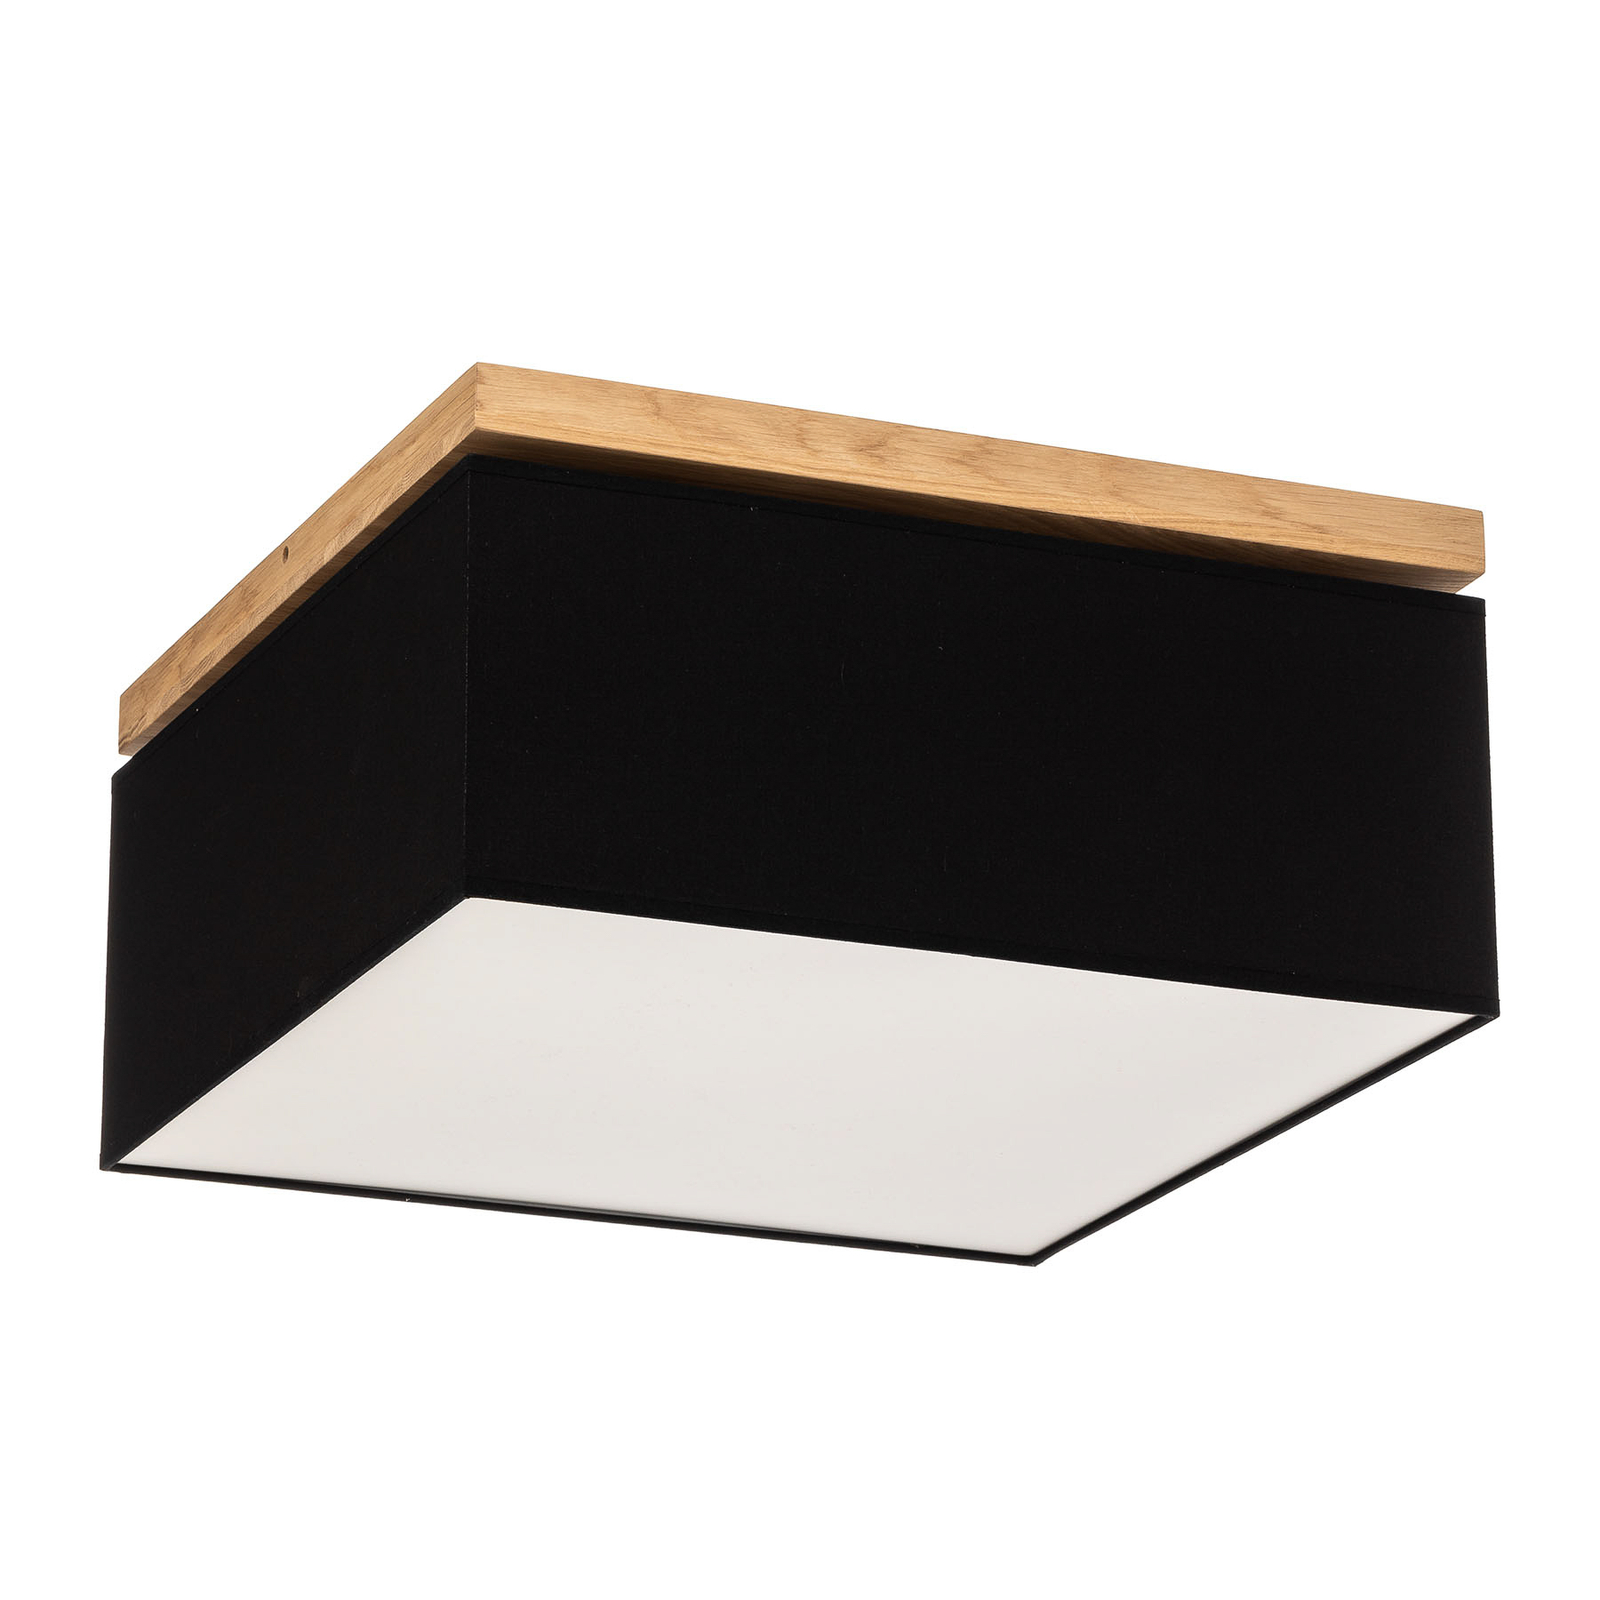 Canvas ceiling light, 45 cm x 45 cm, black